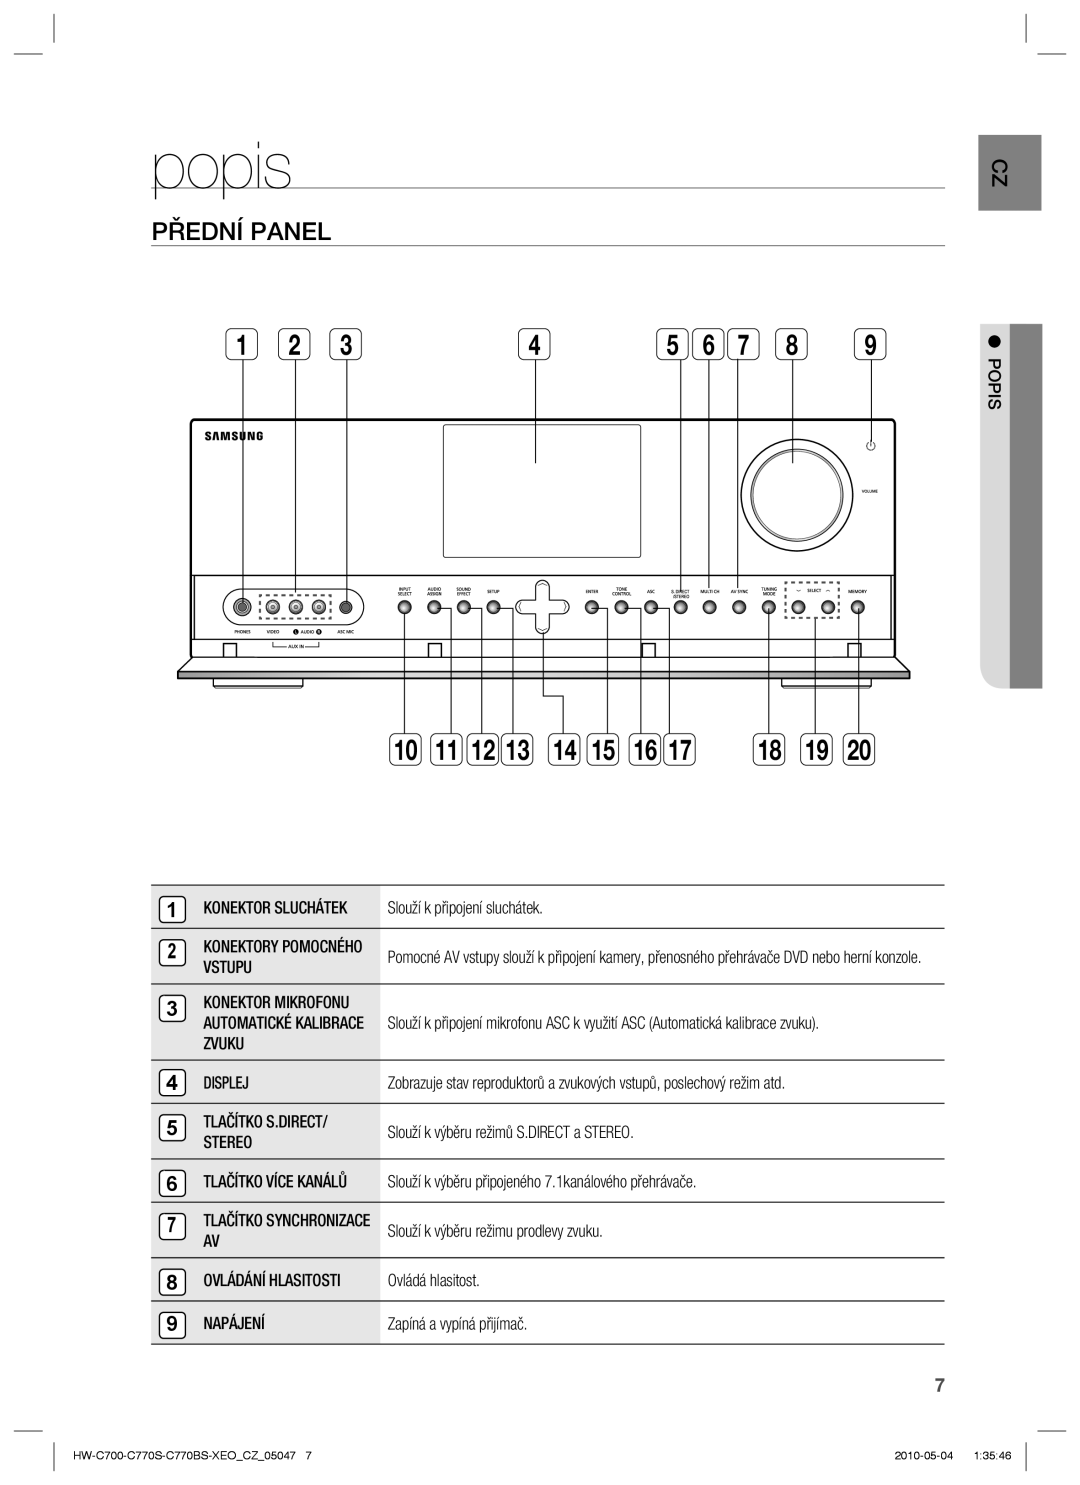 Samsung HW-C770S/EDC, HW-C700/EDC, HW-C770S/XEE manual popis, Přední Panel 